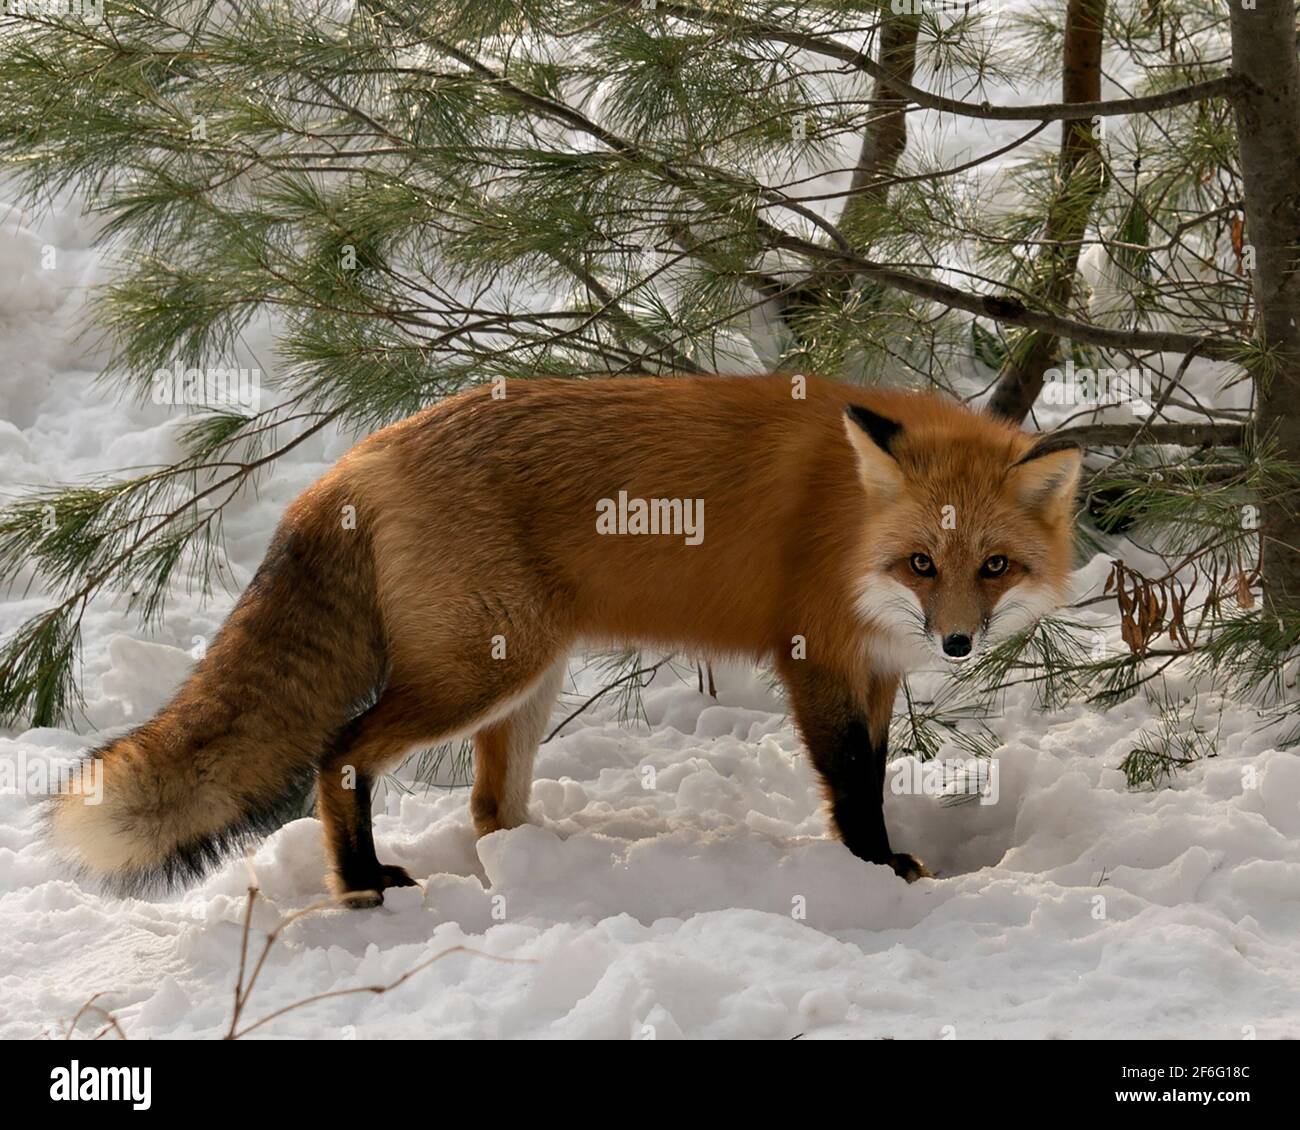 Renard roux regardant la caméra pendant la saison d'hiver dans son environnement et son habitat avec le fond de pin de neige montrant la queue de renard broussaillé, la fourrure. Fox image Banque D'Images